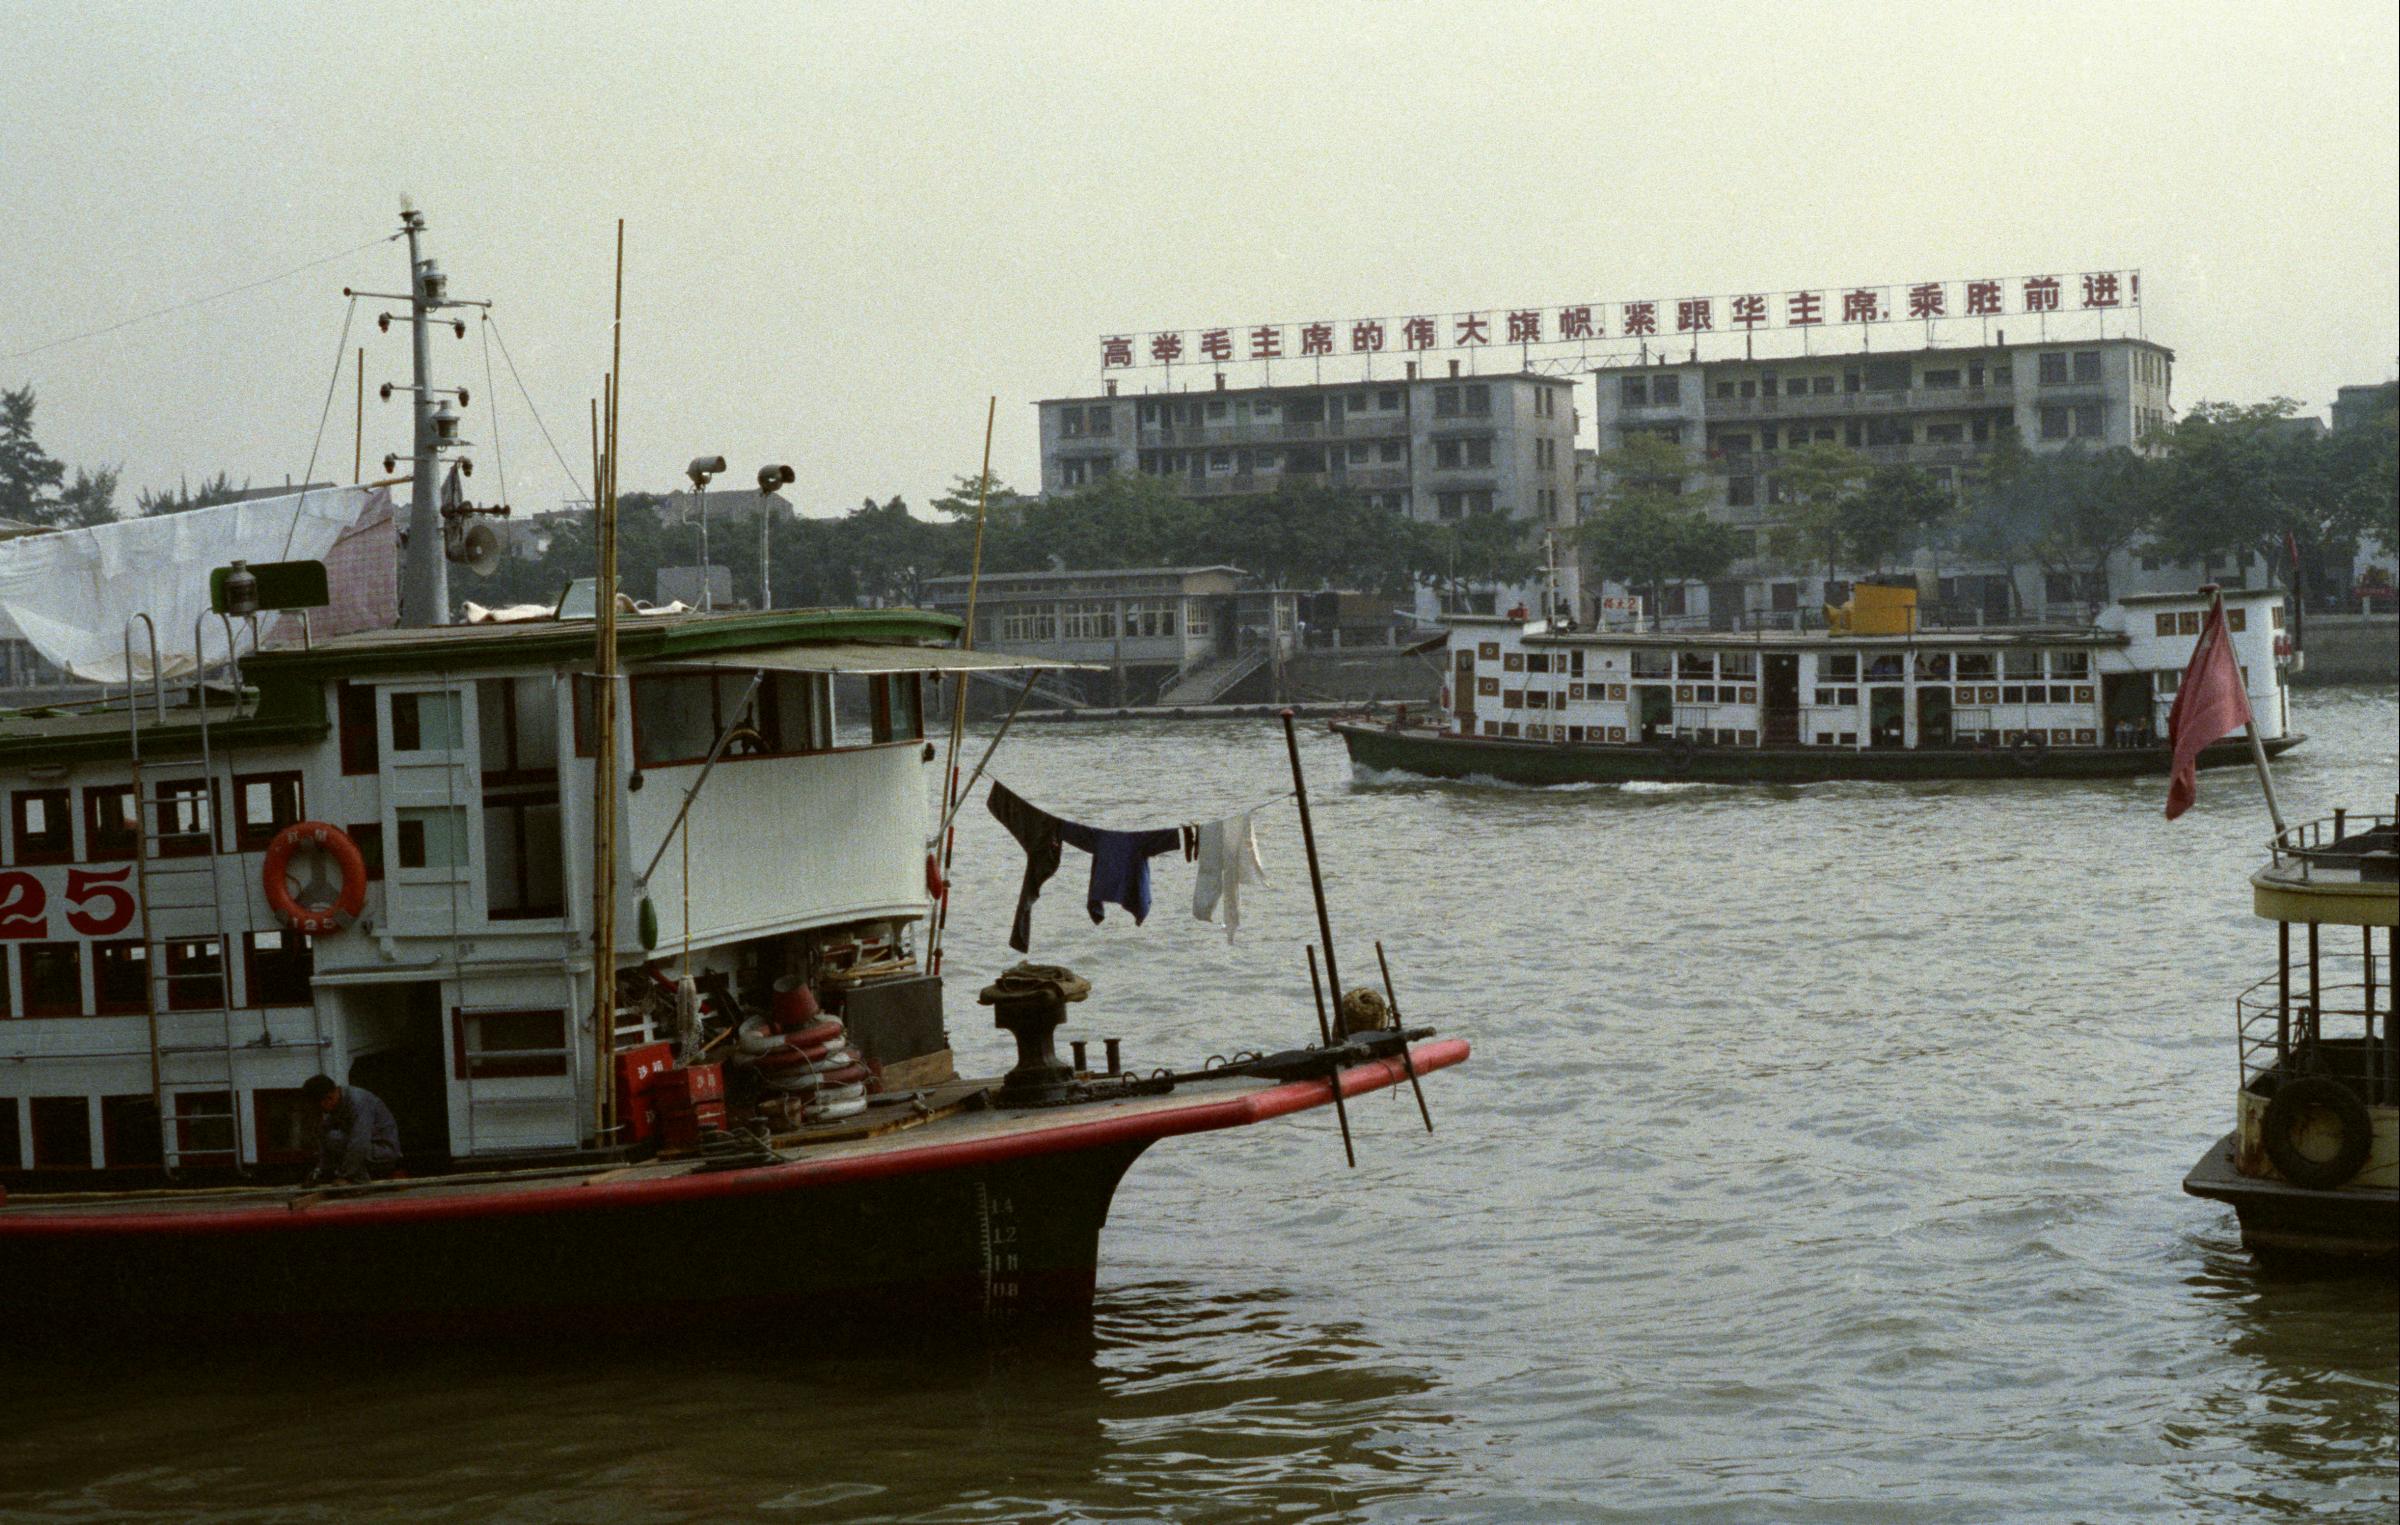 广州洲头咀码头旧照片图片